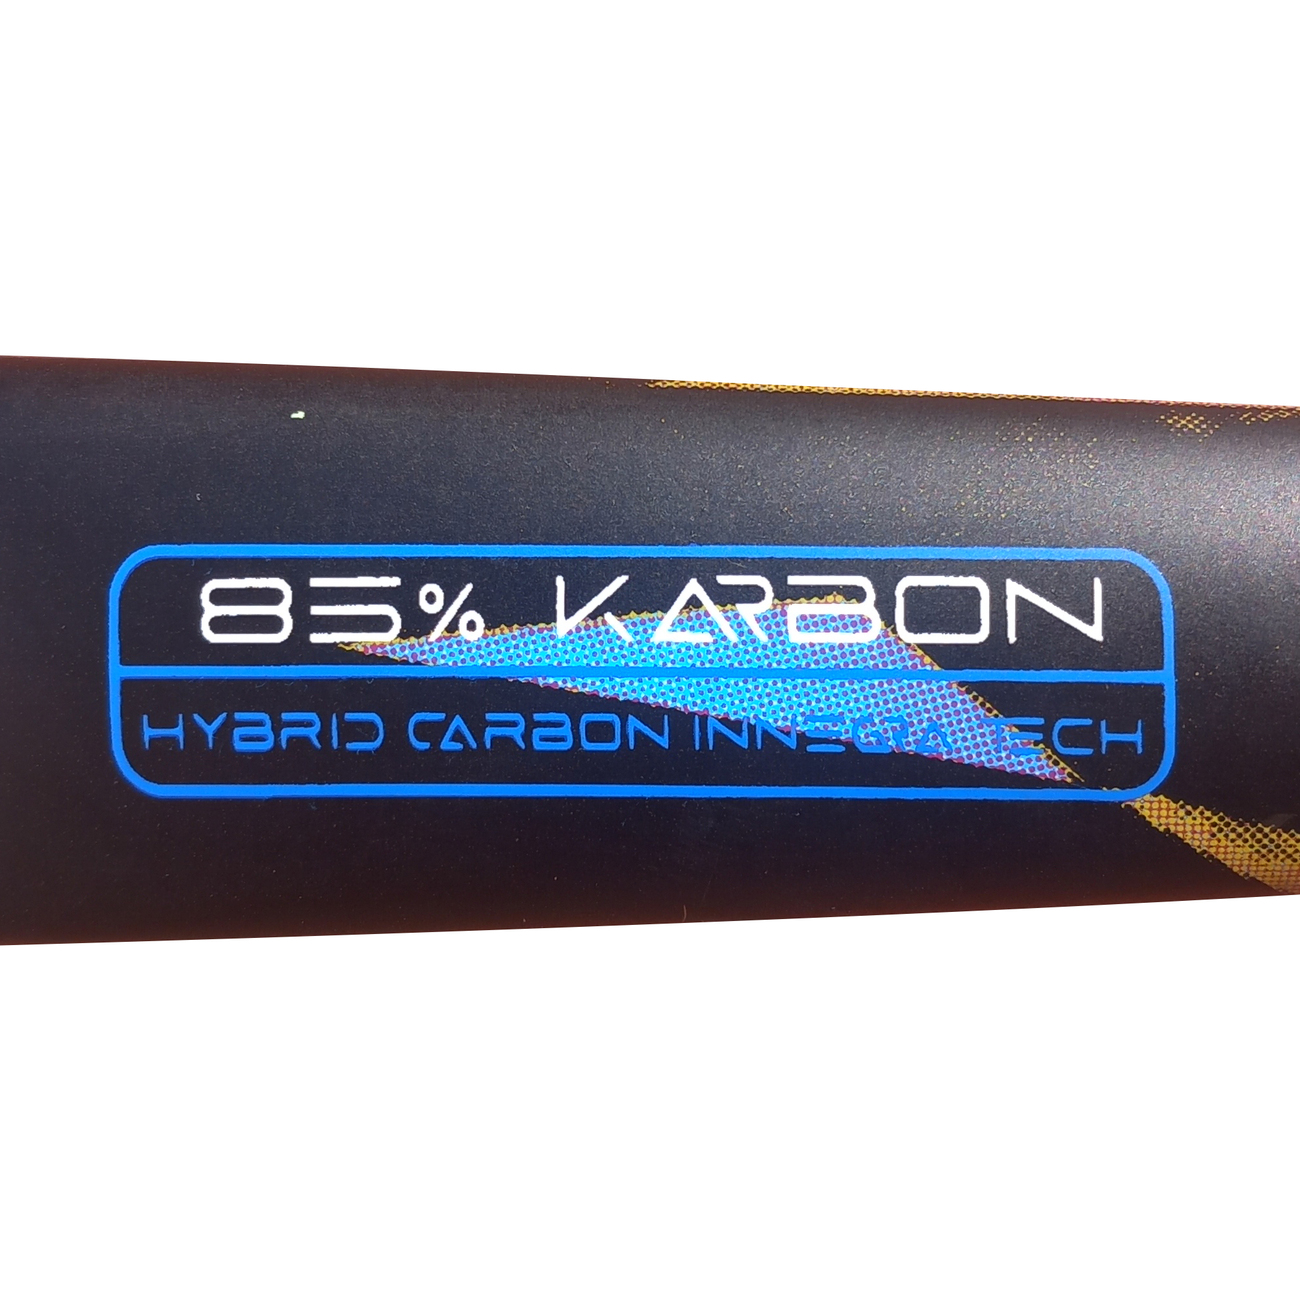 ks synth PR - X85 aramid carbon T1000 - 36.5 SL